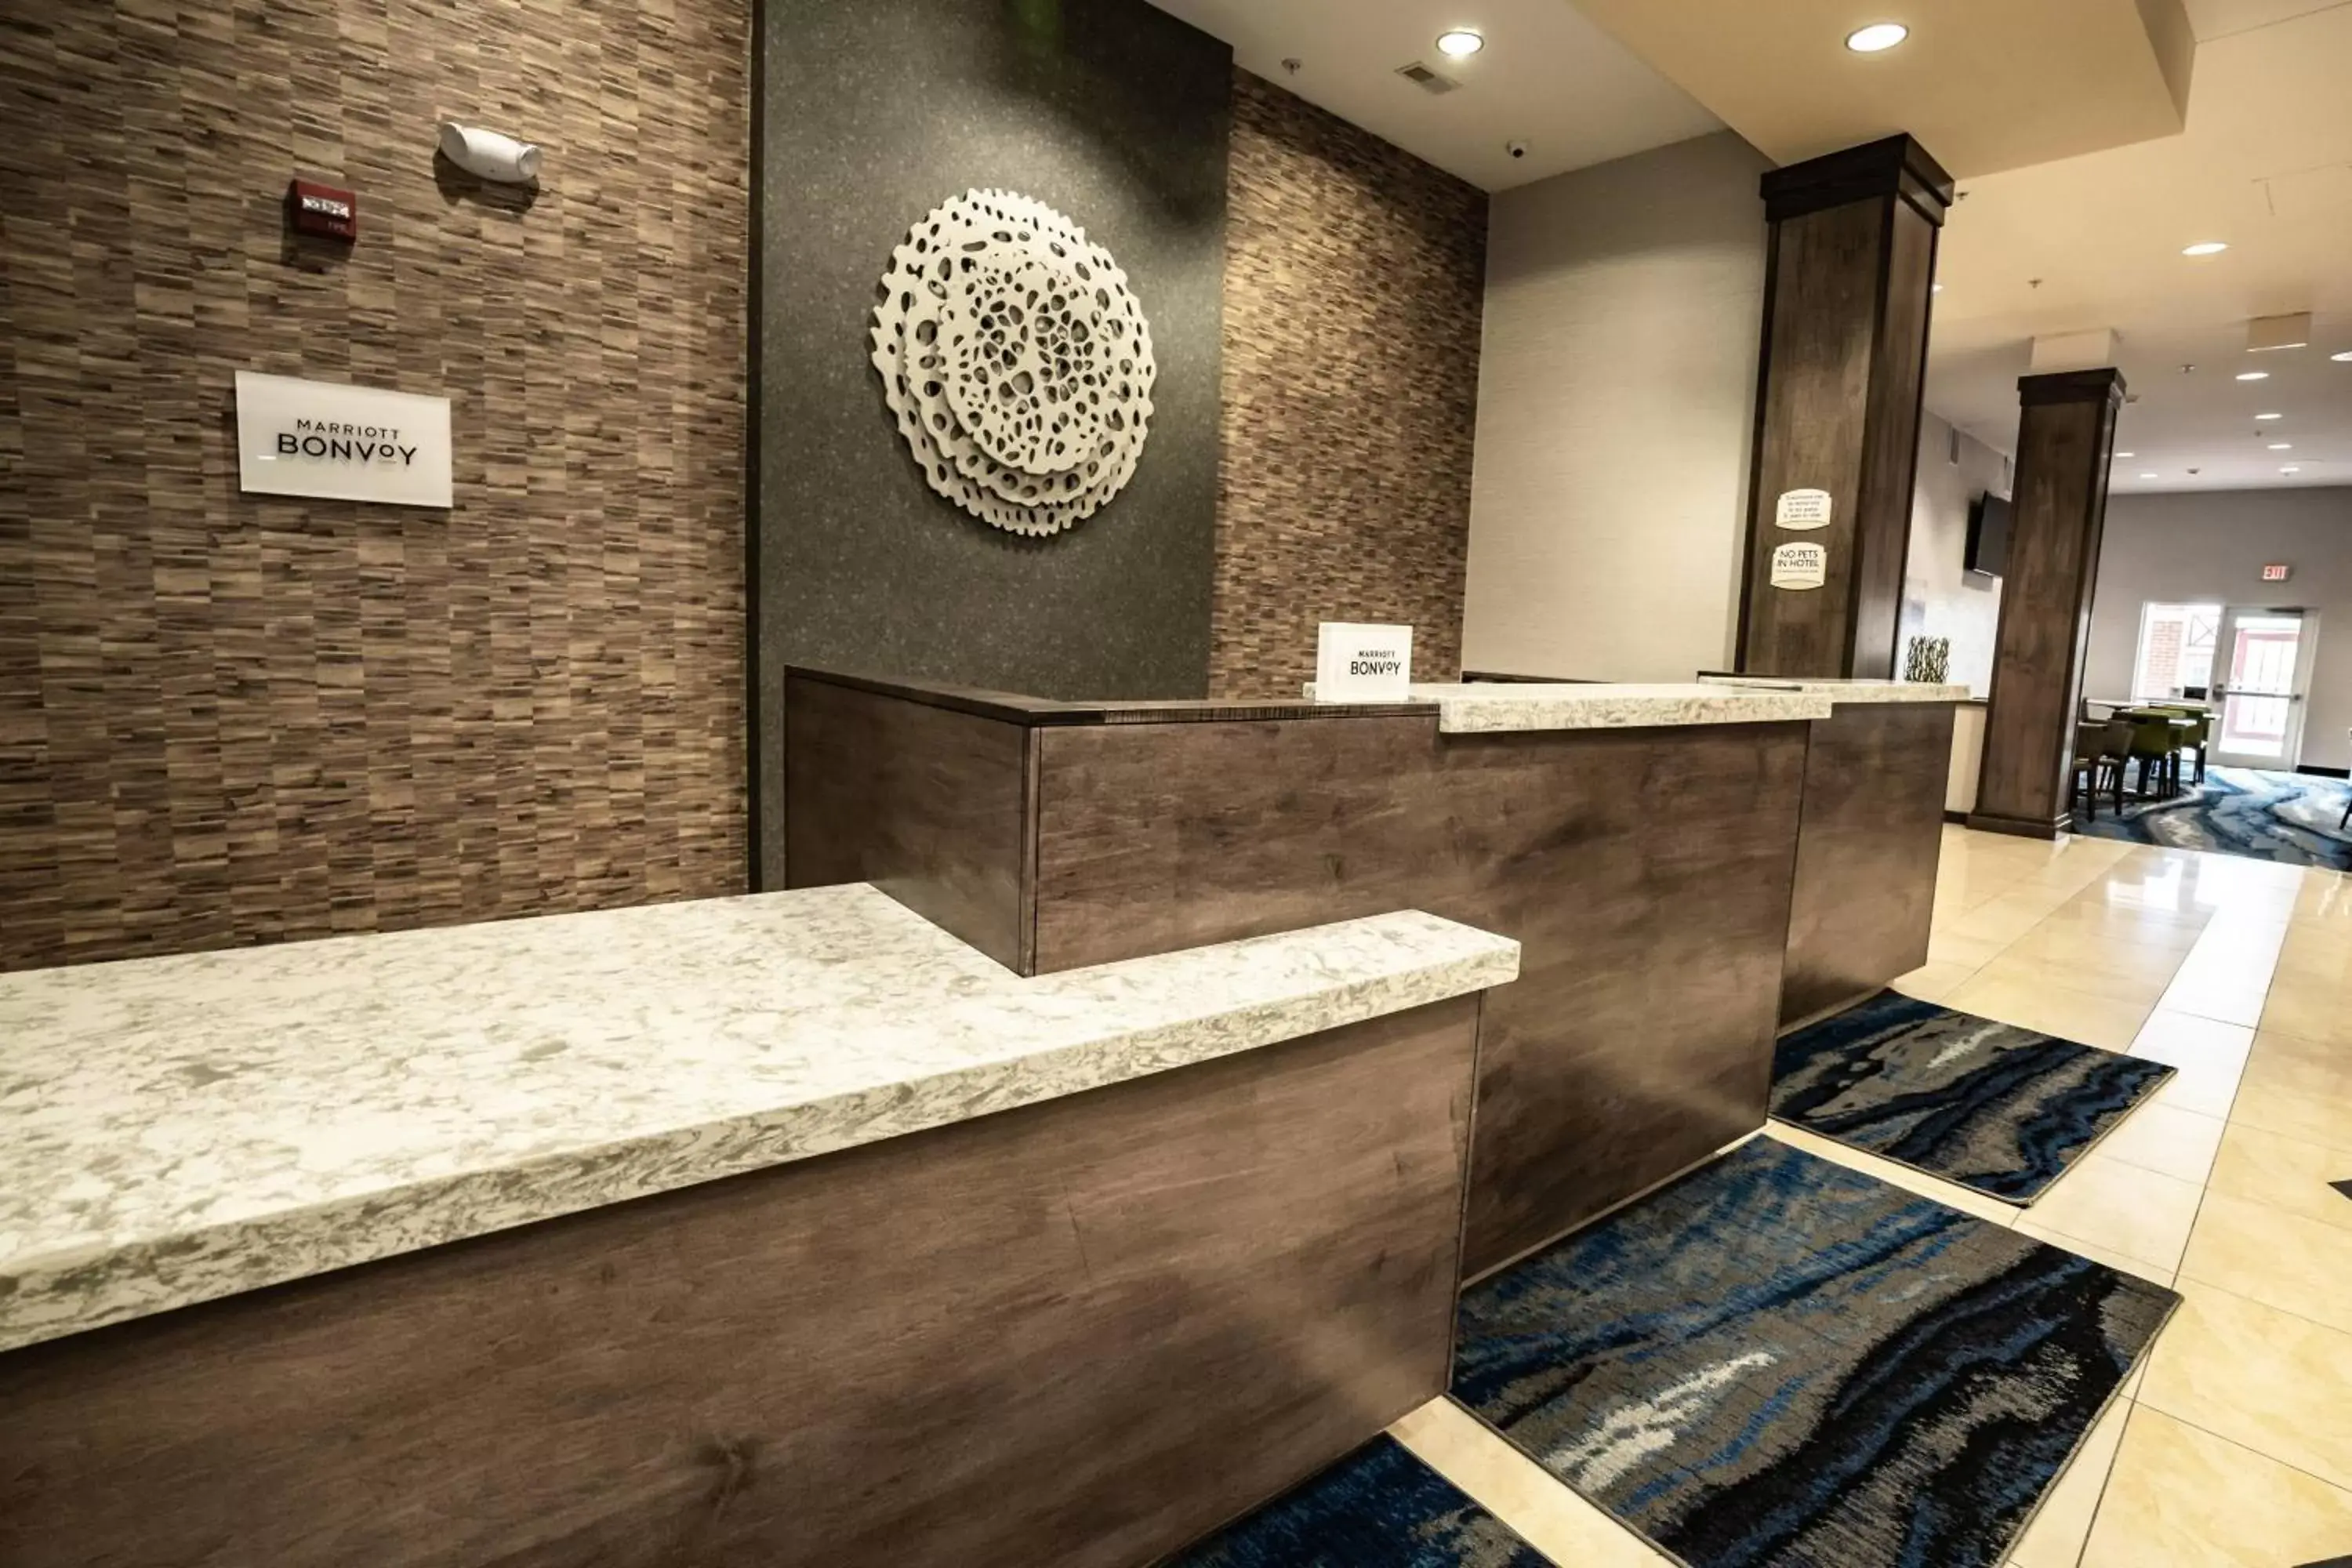 Lobby or reception, Bathroom in Fairfield Inn & Suites by Marriott Kearney